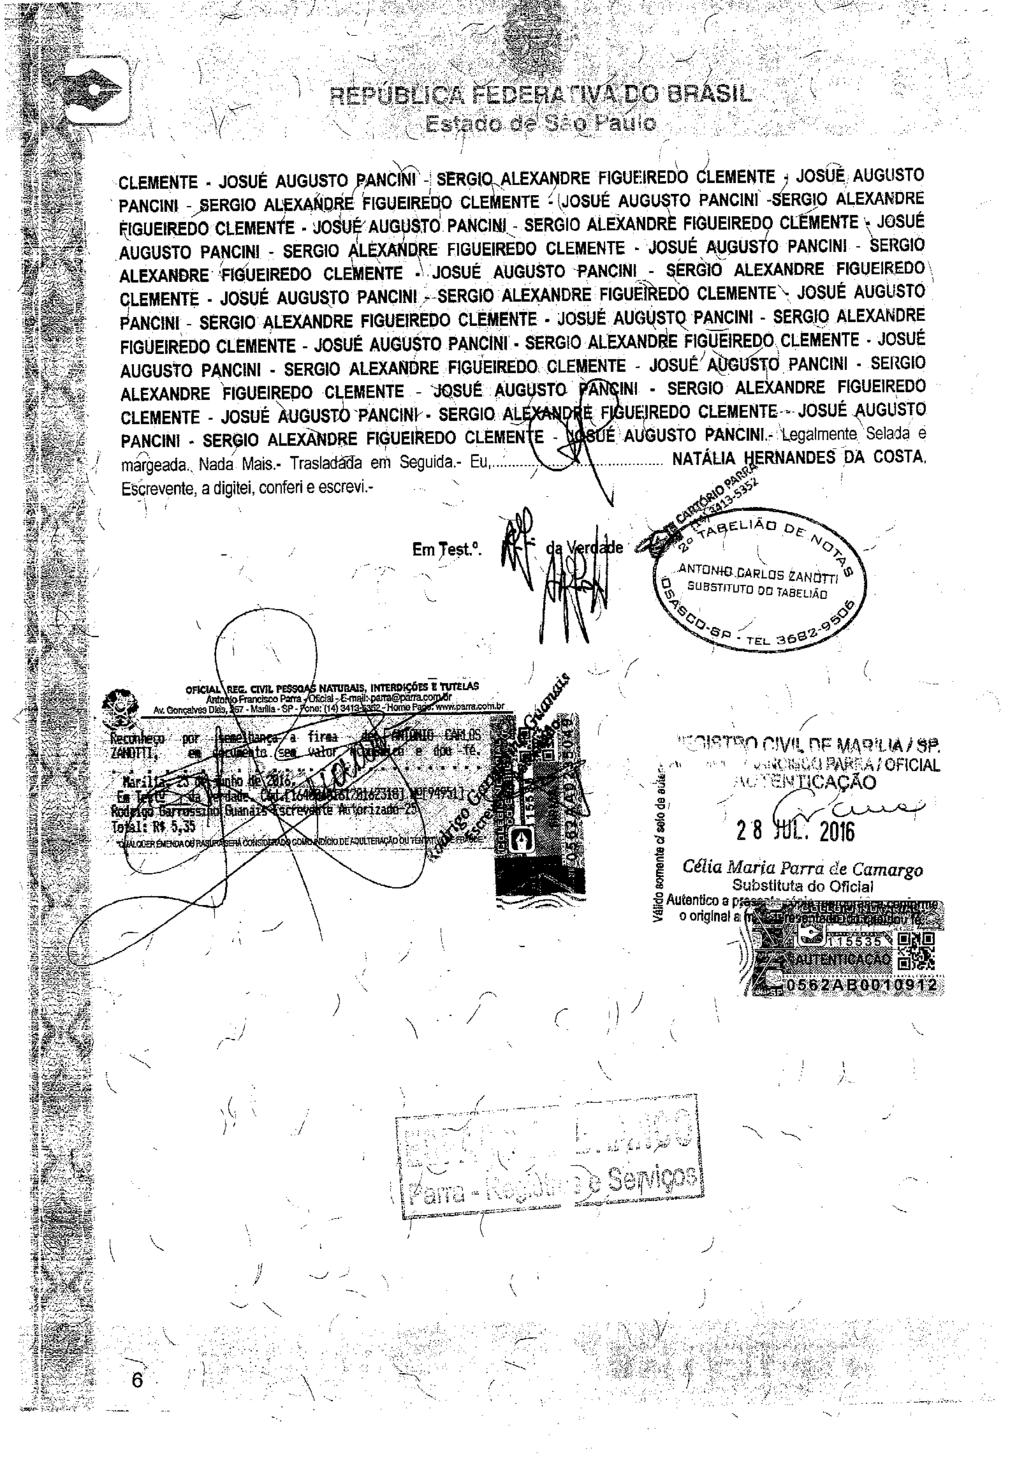 fls. 8 Este documento é cópia do original, assinado digitalmente por NEIDE SALVATO GIRALDI e Tribunal de Justica do Estado de Sao Paulo, protocolado em 07/12/2016 às 15:05, sob o número